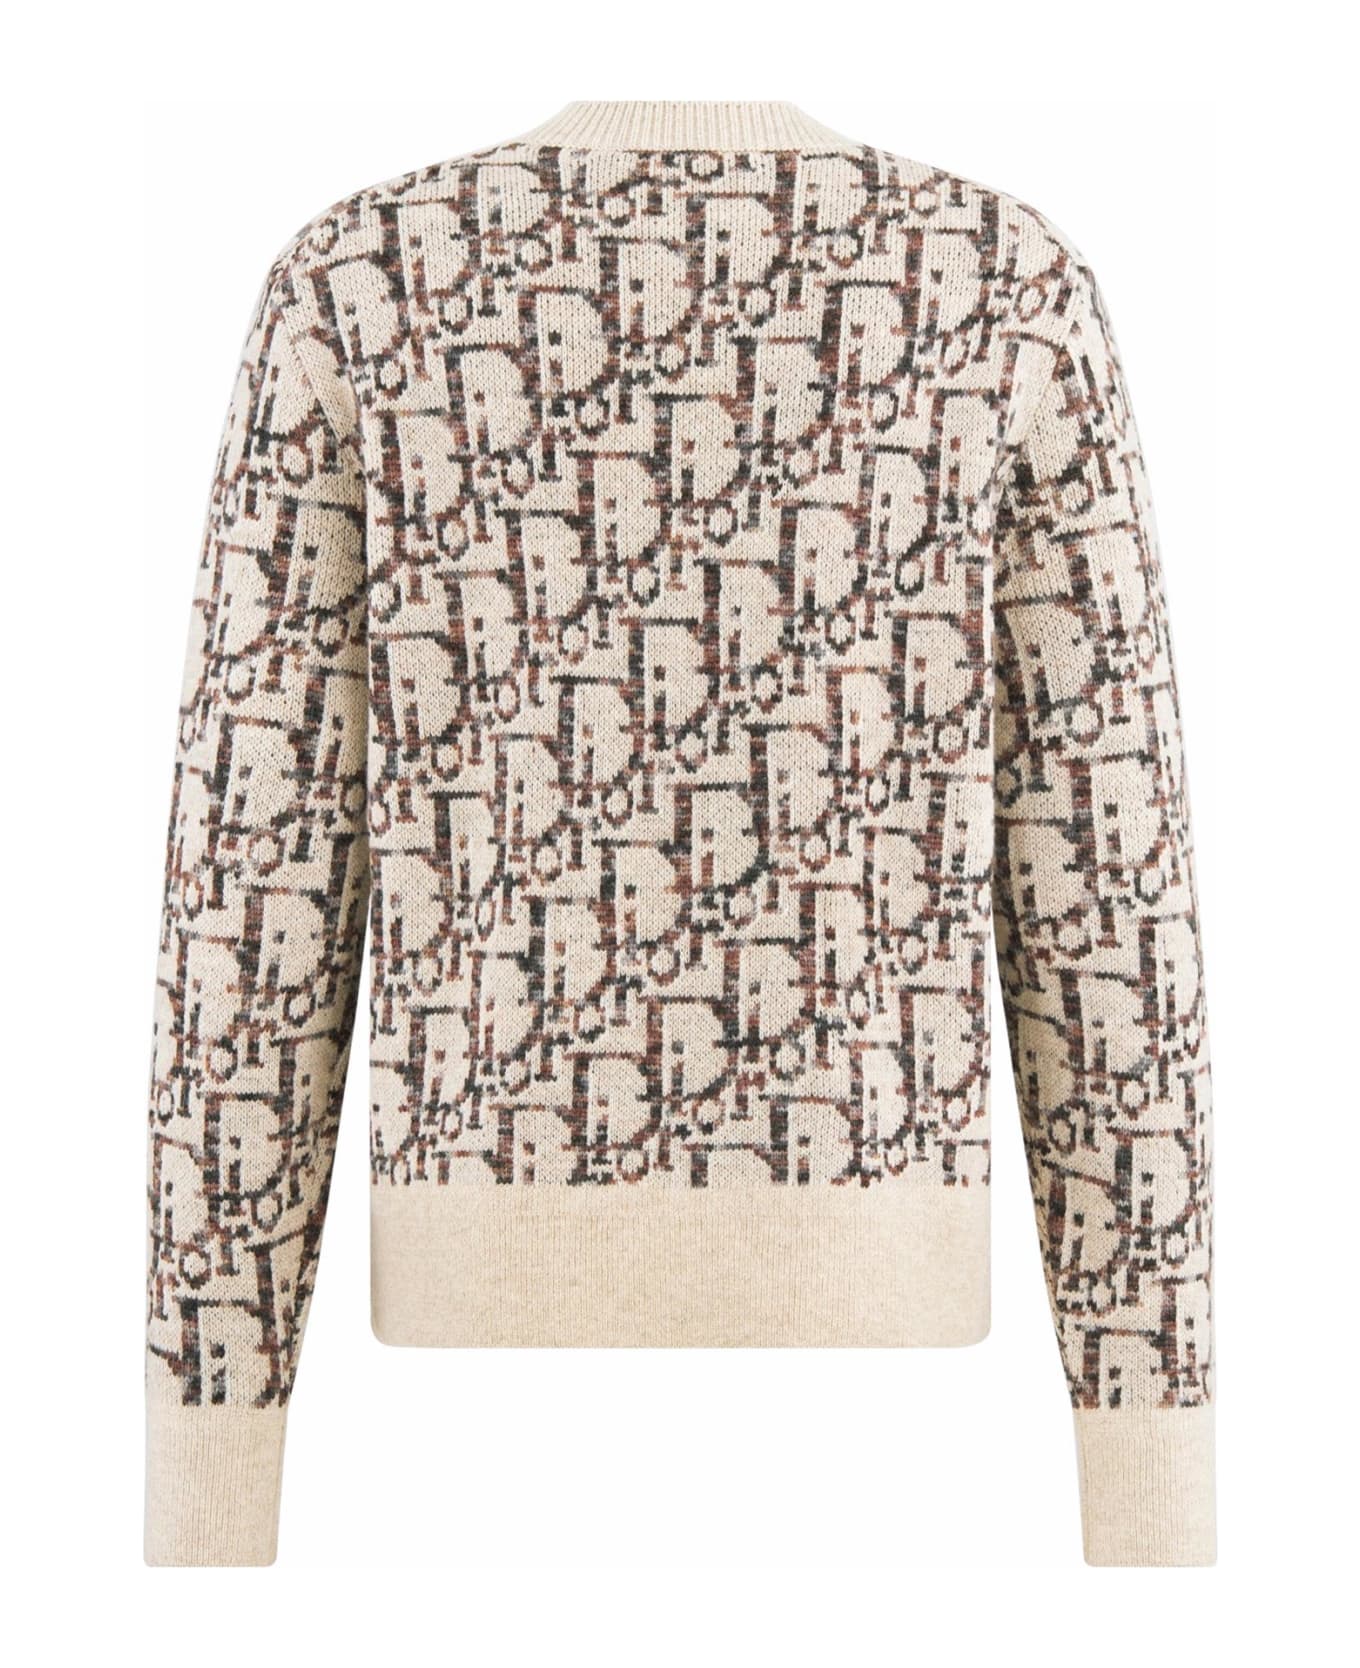 Dior Homme Sweater - BEIGE